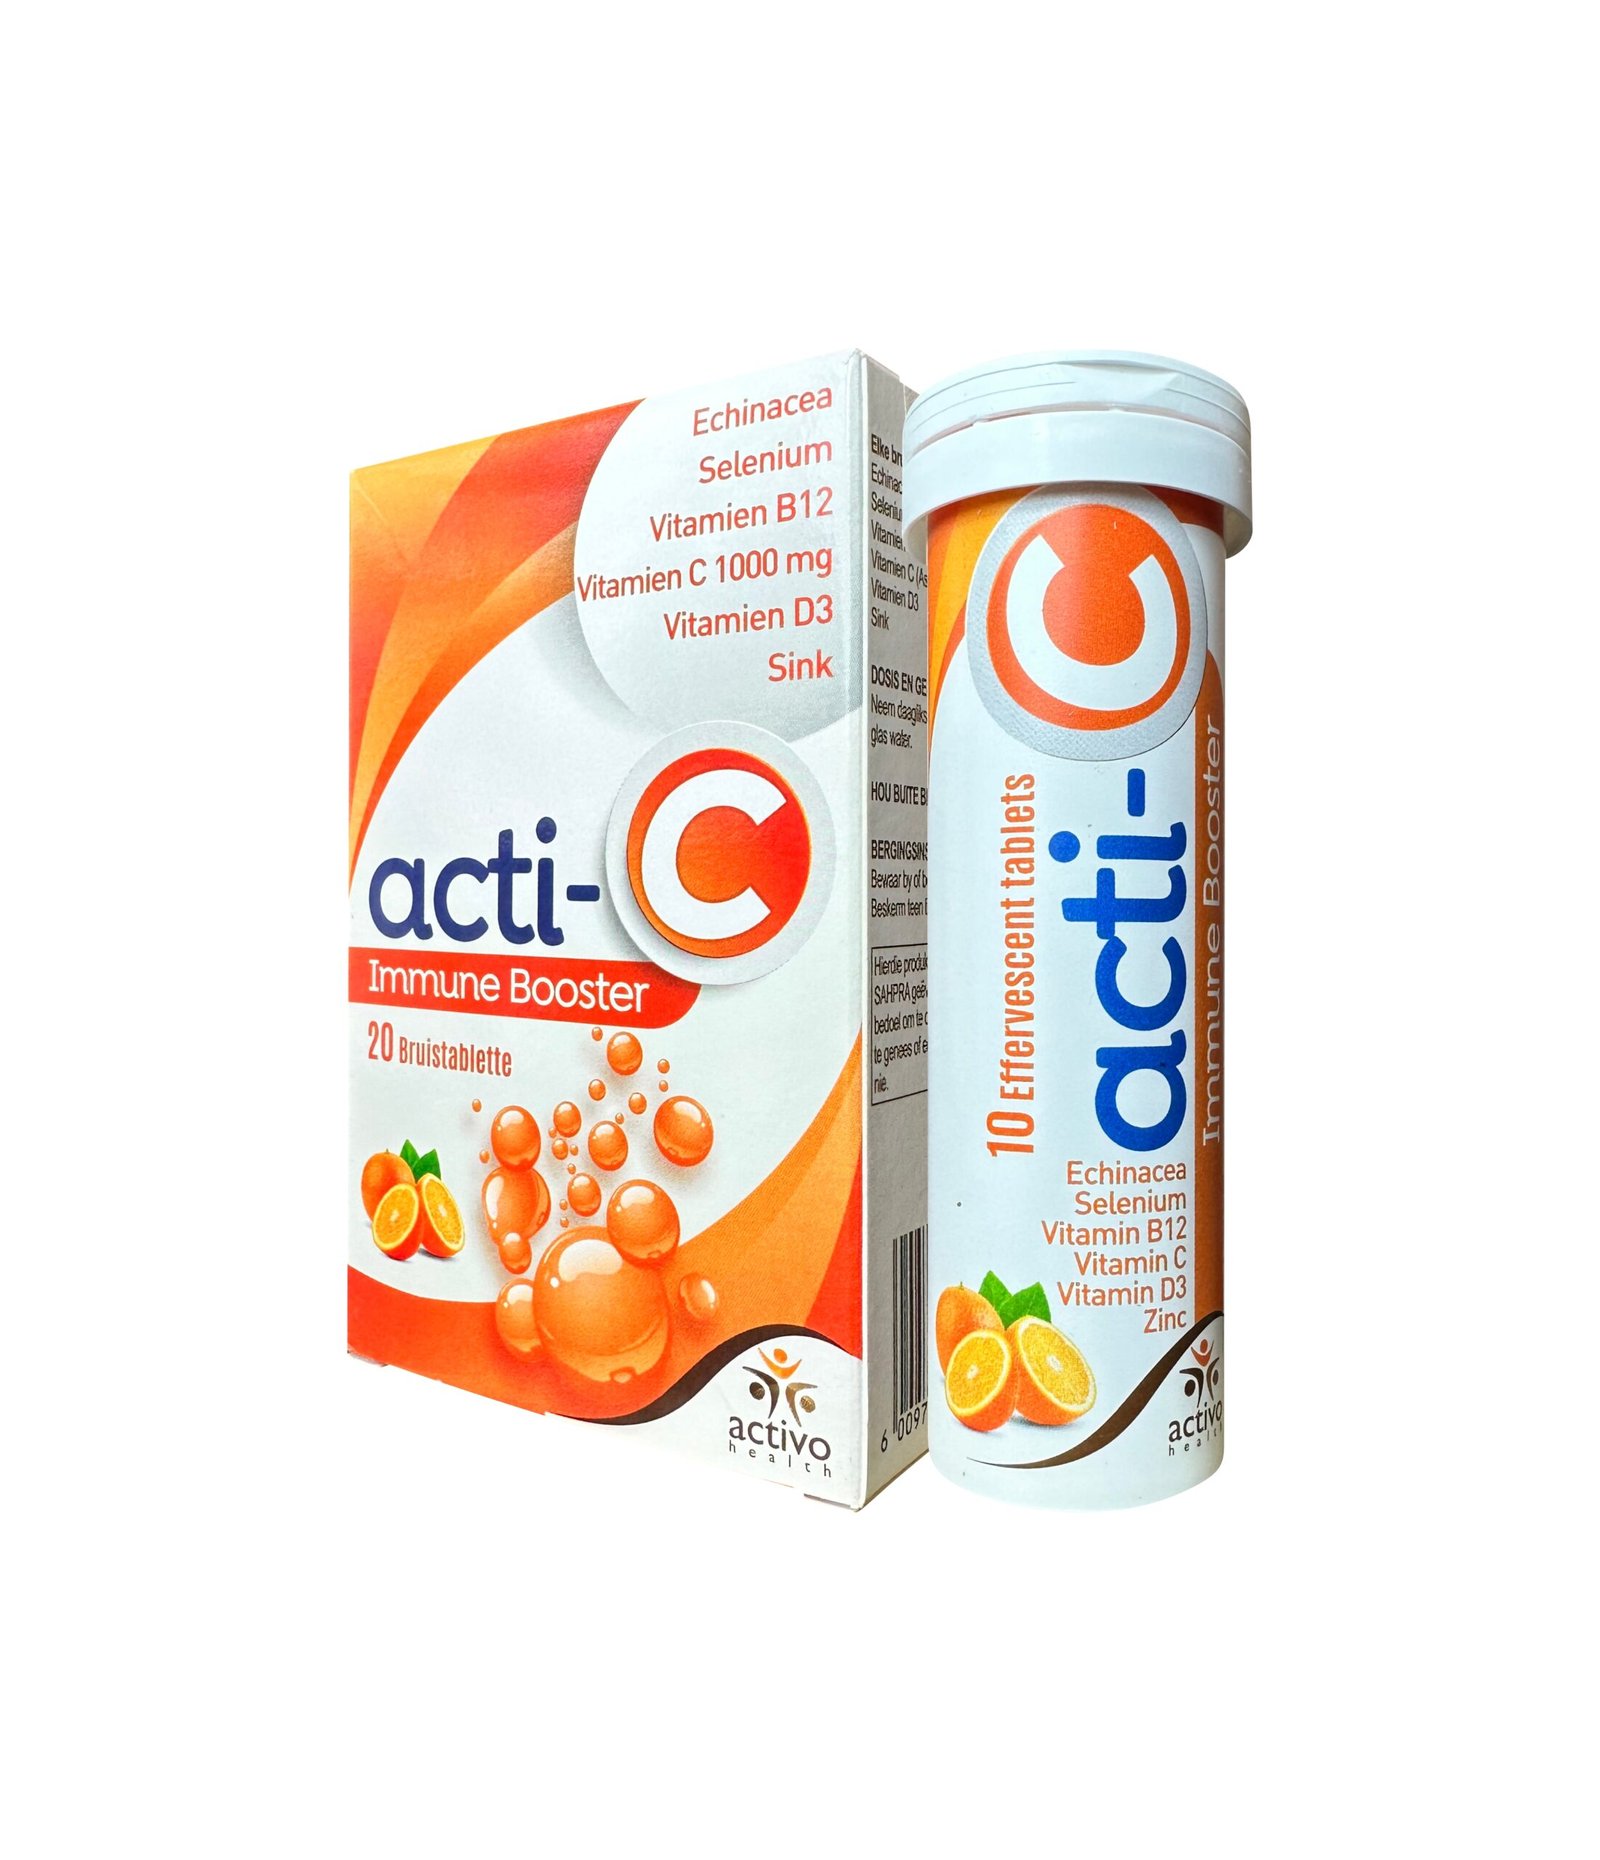 Acti-C Immune Booster